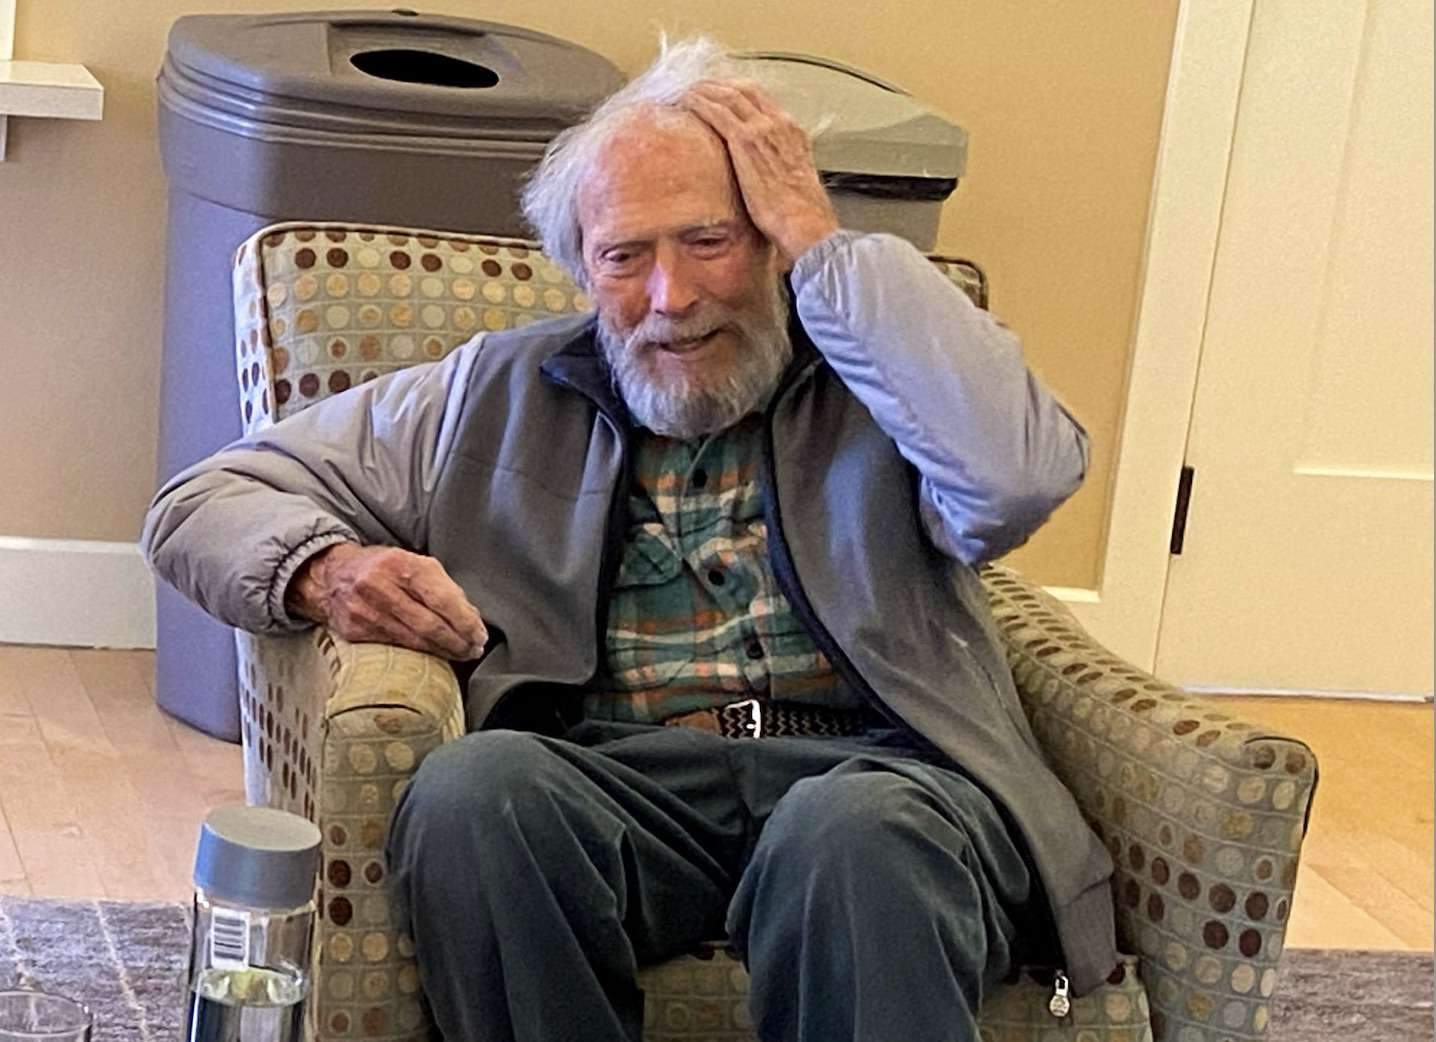 Clint Eastwood ja no pot pujar ni 4 esglaons, preocupant estat de salut